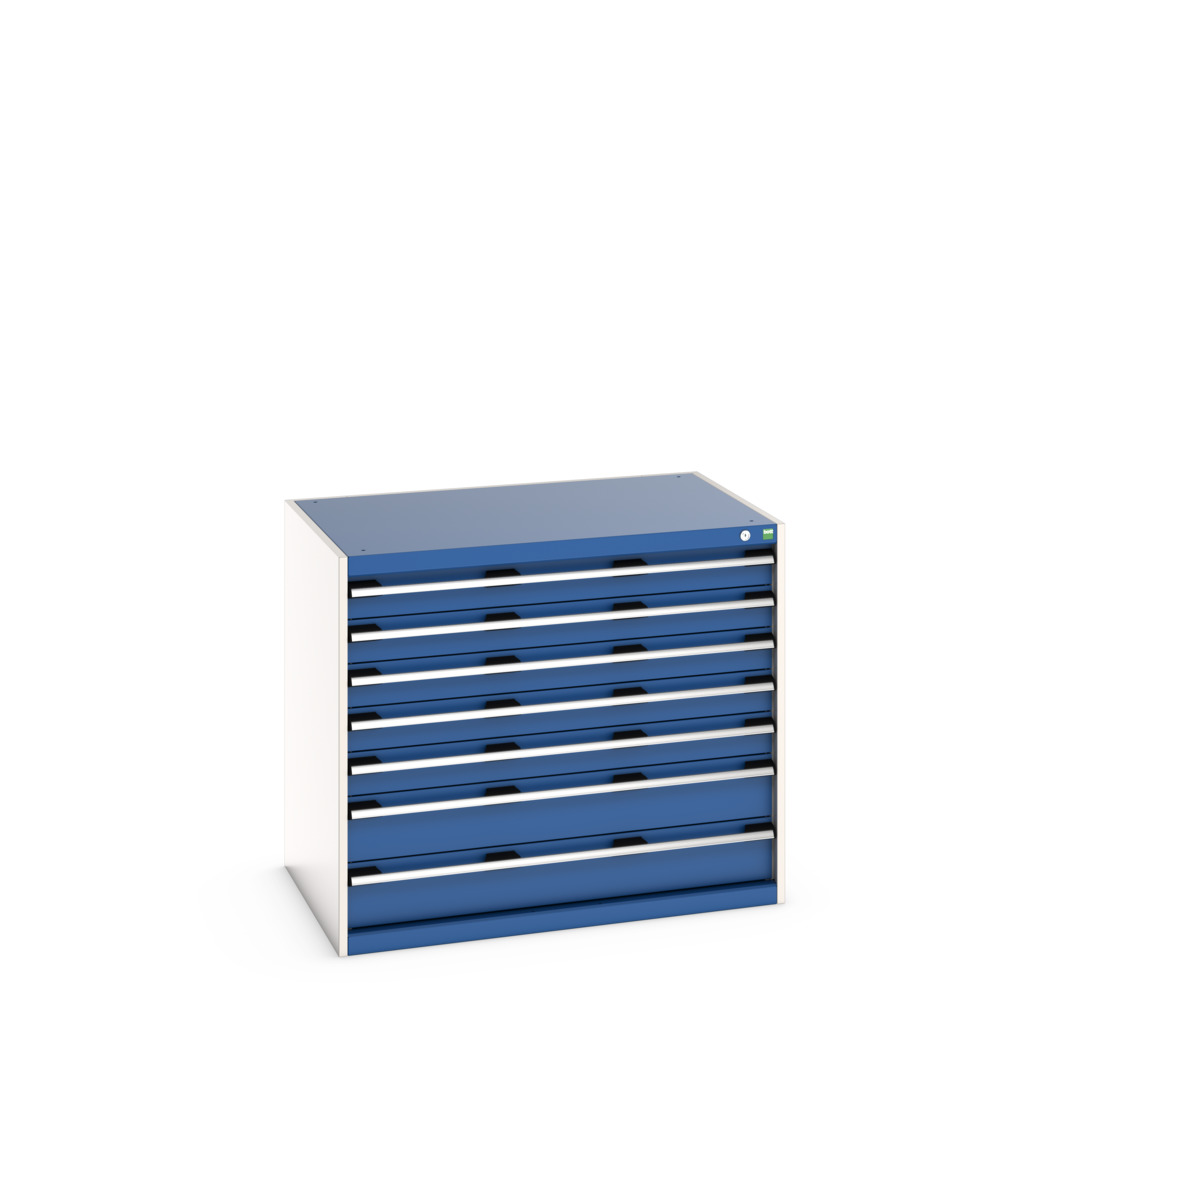 40029092.11V - cubio drawer cabinet